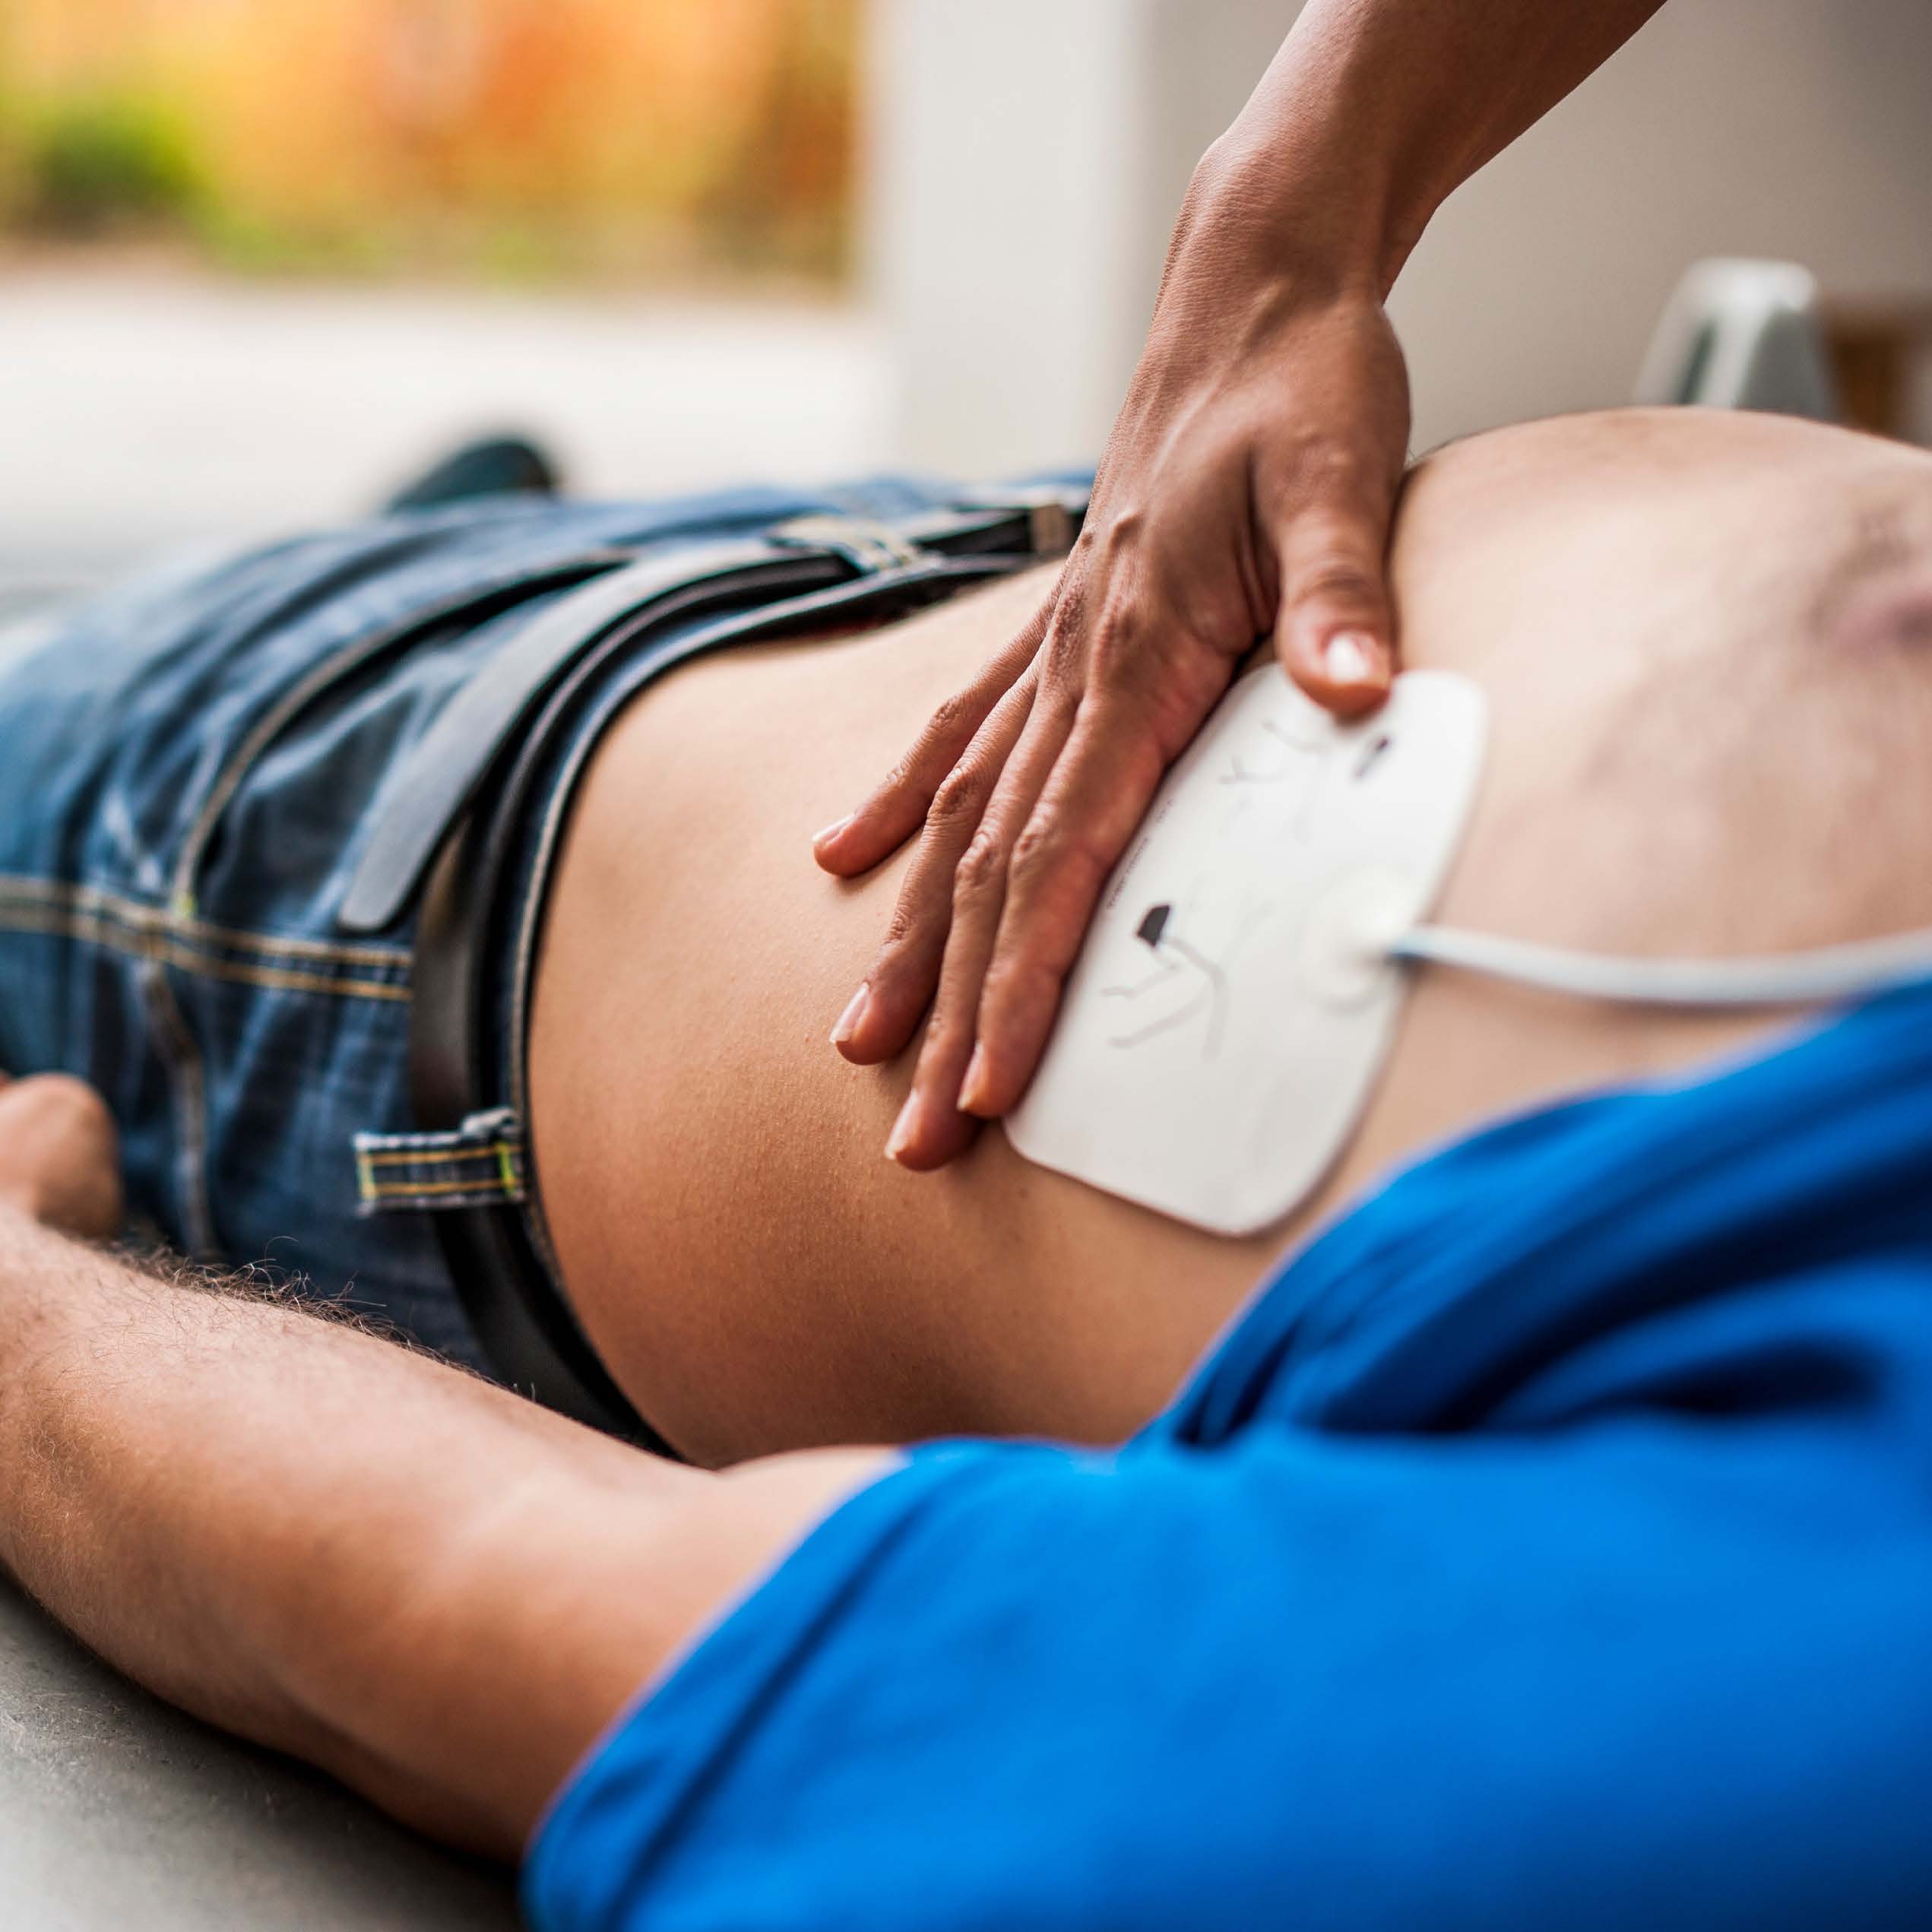 Medizintechnik: Wann und wie der Defibrillator hilft